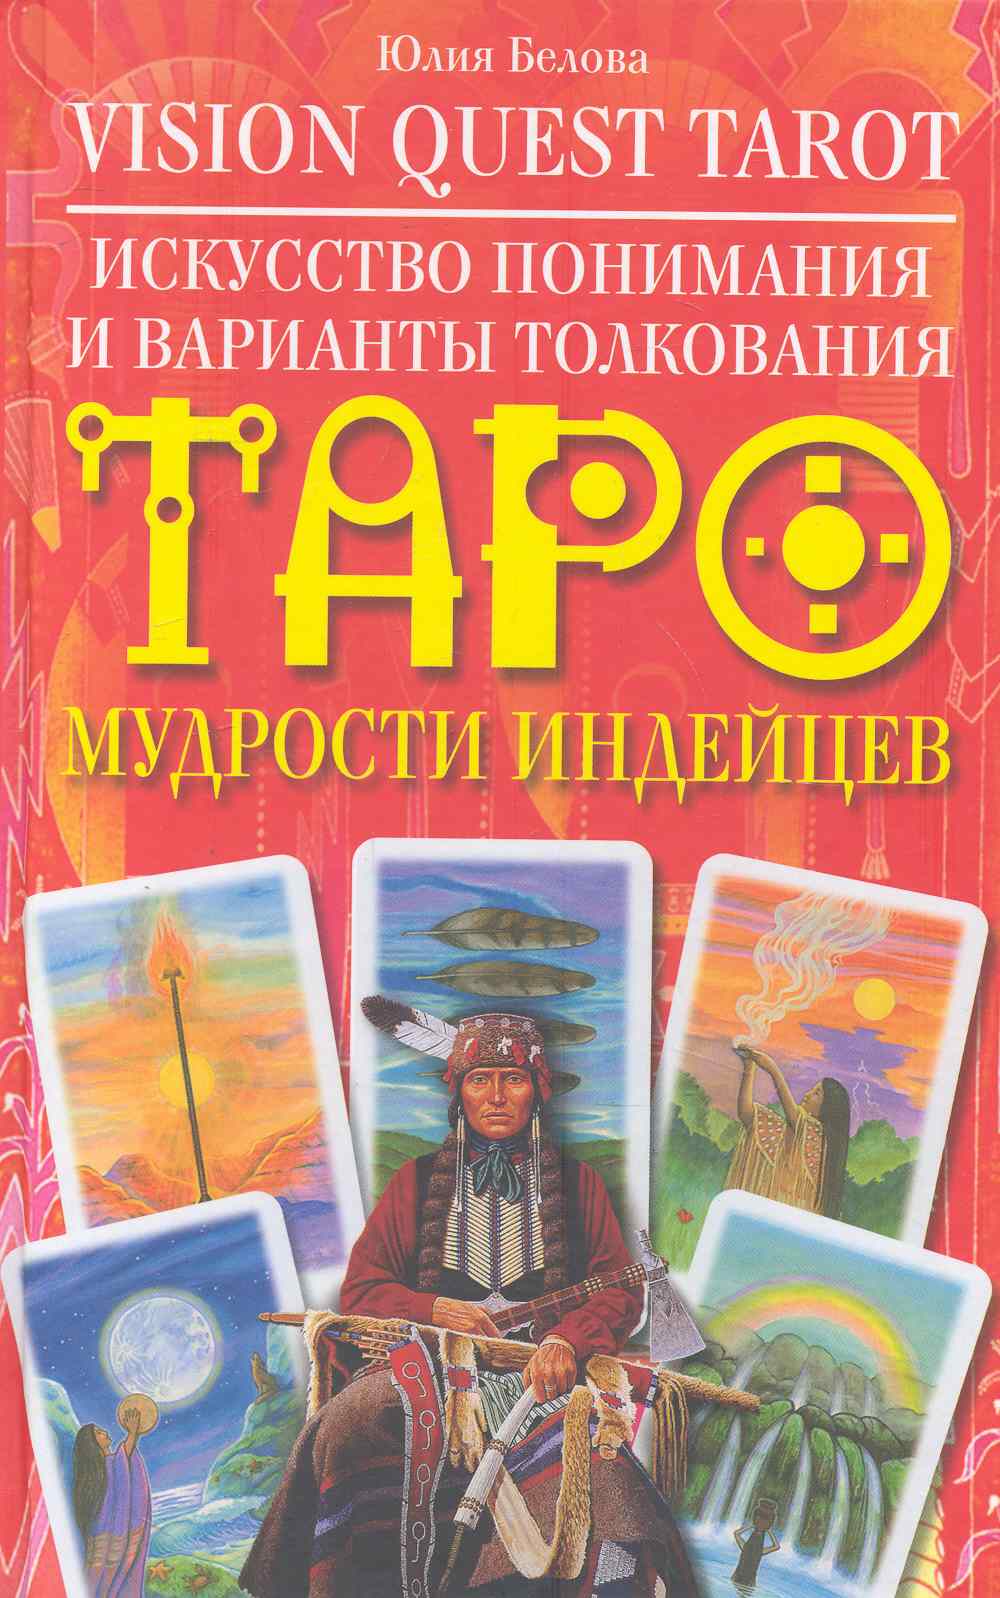 Белова Юлия Валерьевна Vision Quest Tarot. Искусство понимания и варианты толкования Таро мудрости индейцев